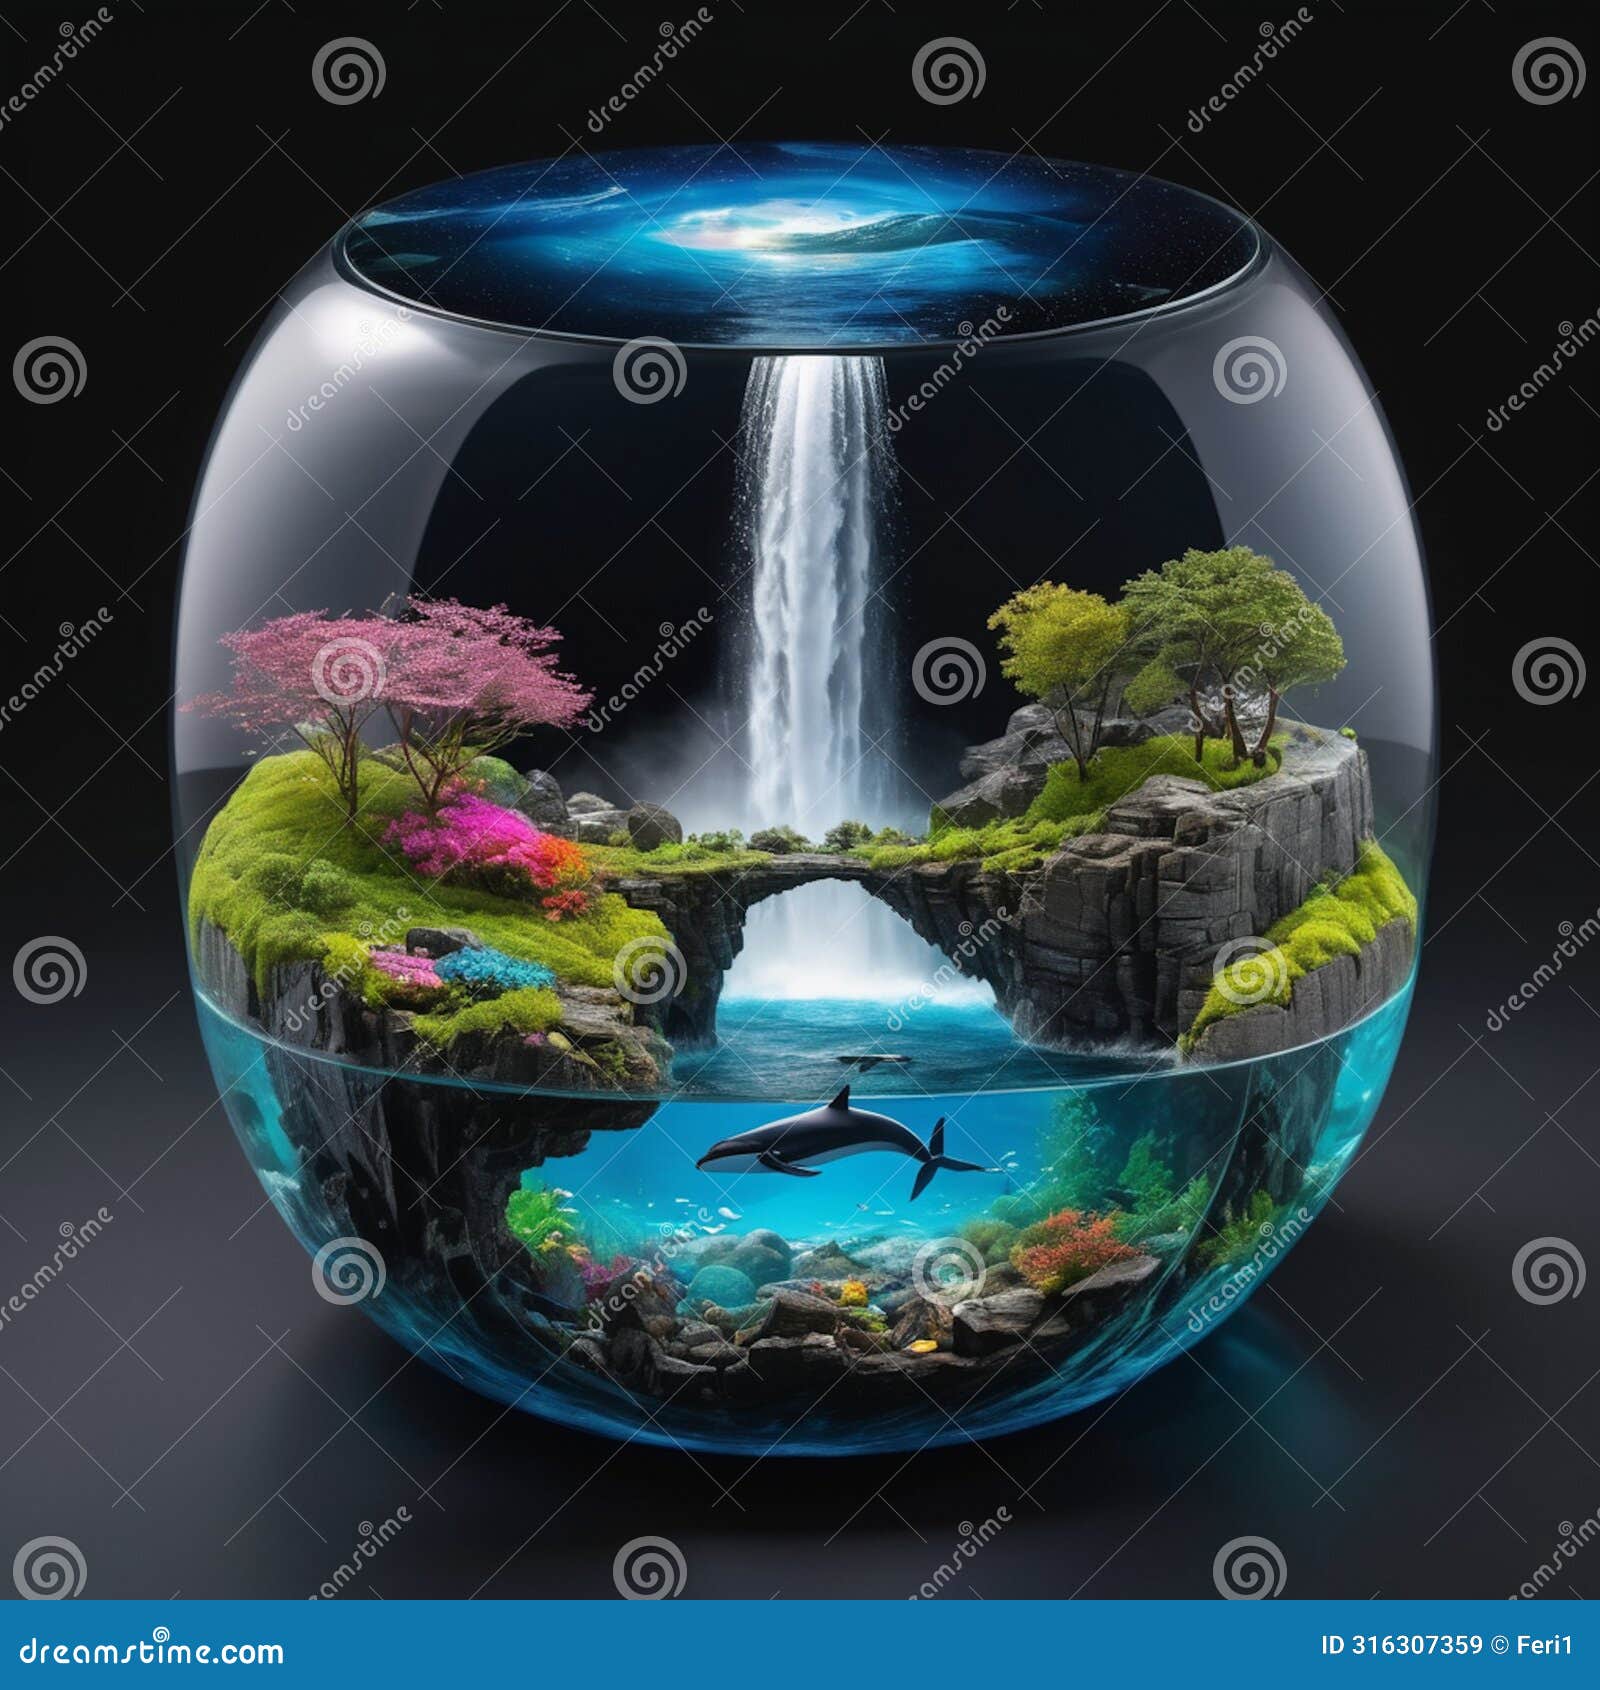 world enclosed in aquarium.